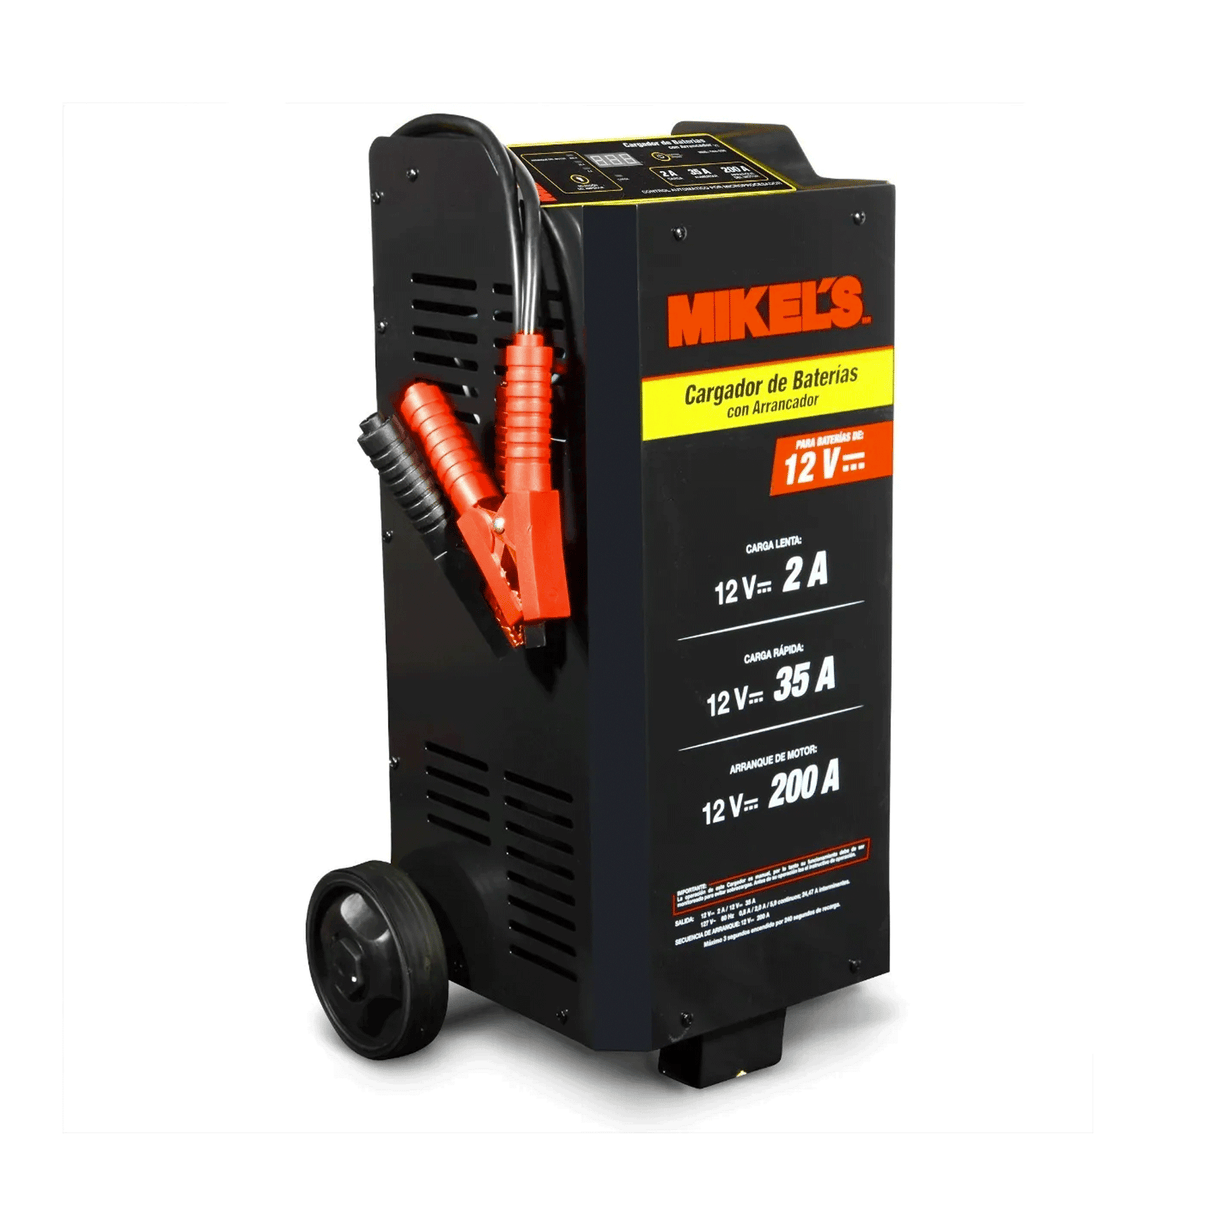 Cargador de Baterías Mikels CBA-200 200 Amp 12 V